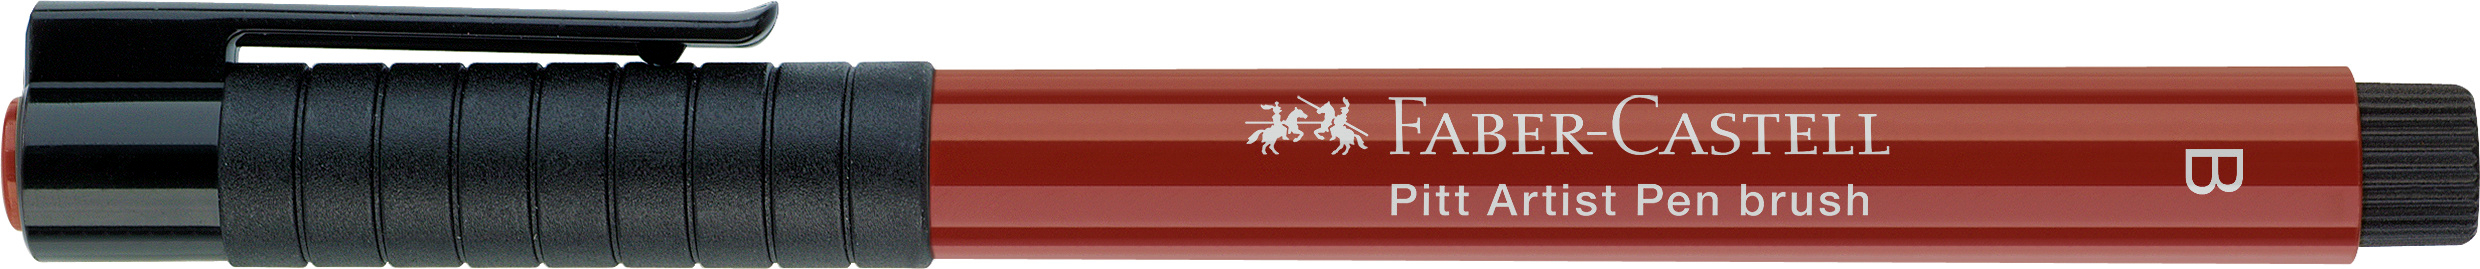 FABER-CASTELL Pitt Artist Pen Brush 2.5mm 167492 india red